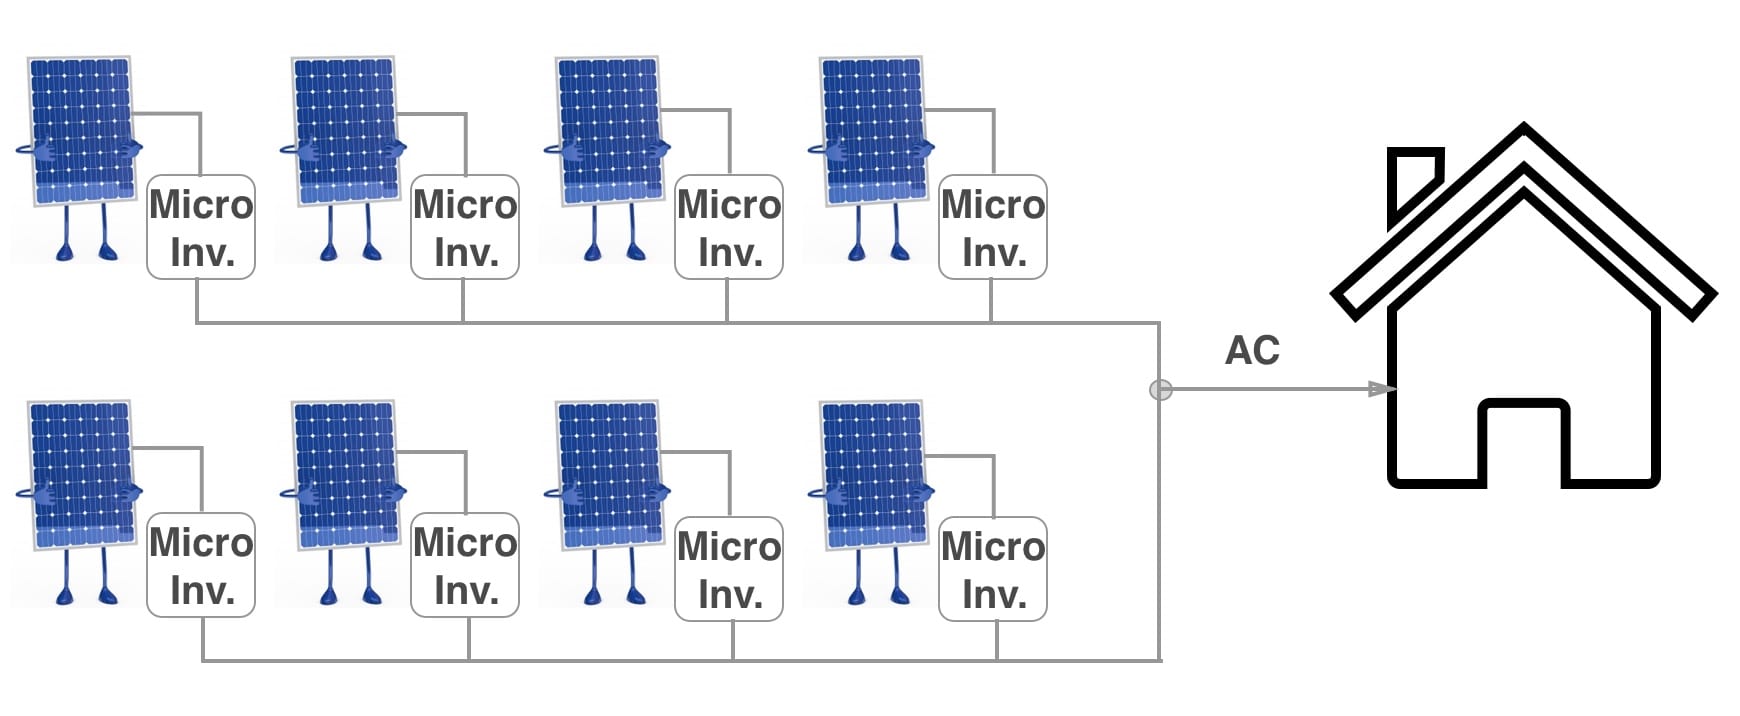 Micro Inverters